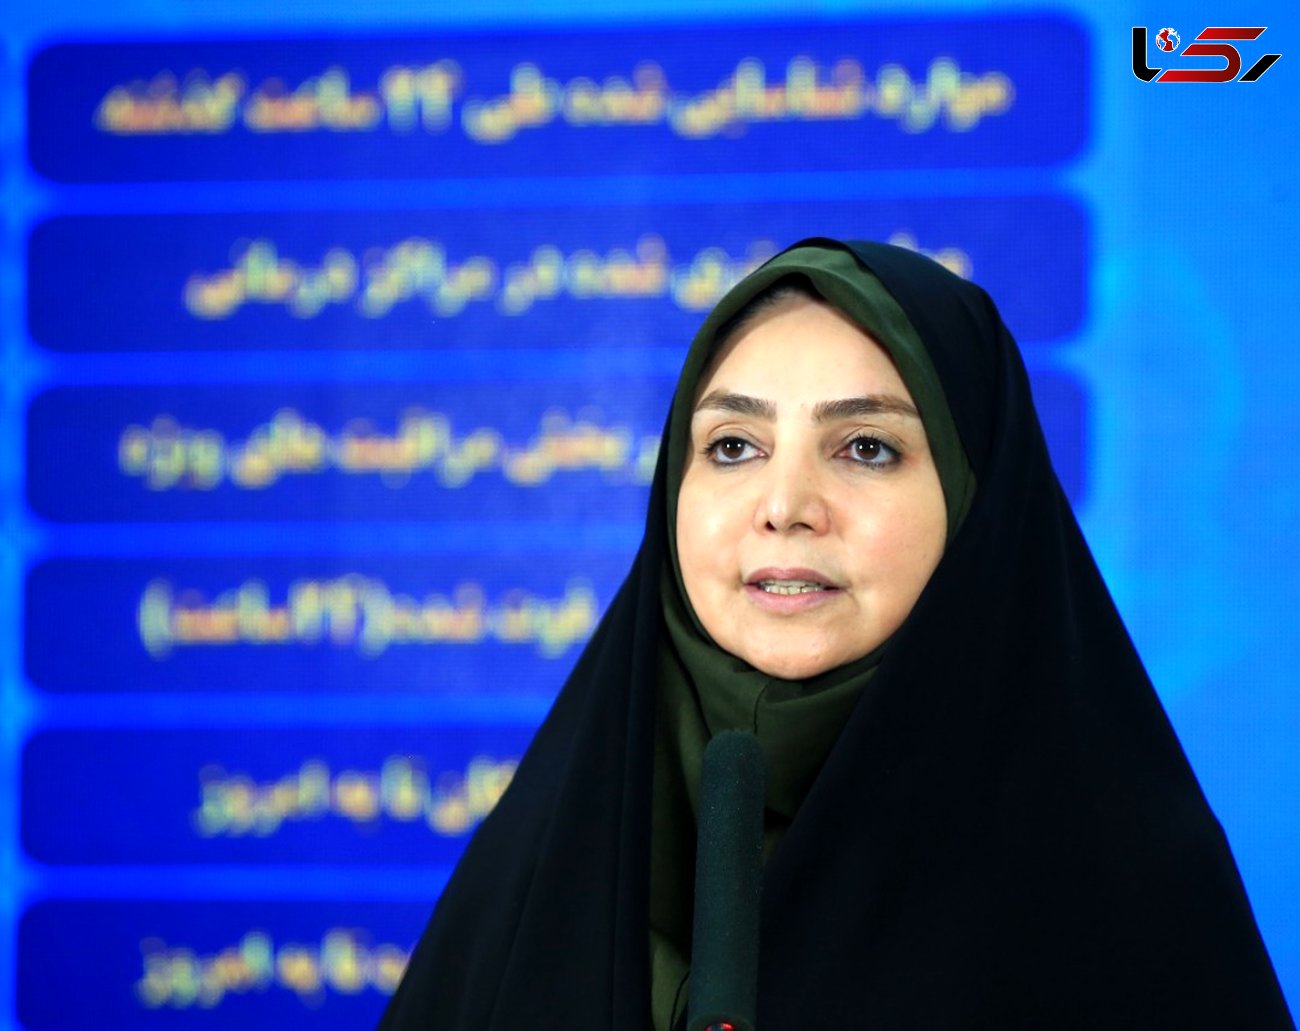 221 مبتلا به کرونا در 24 ساعت گذشته در ایران جانباختند / مجموع بیماران کووید۱۹ در کشور به ۲۵۰ هزار نفر رسید